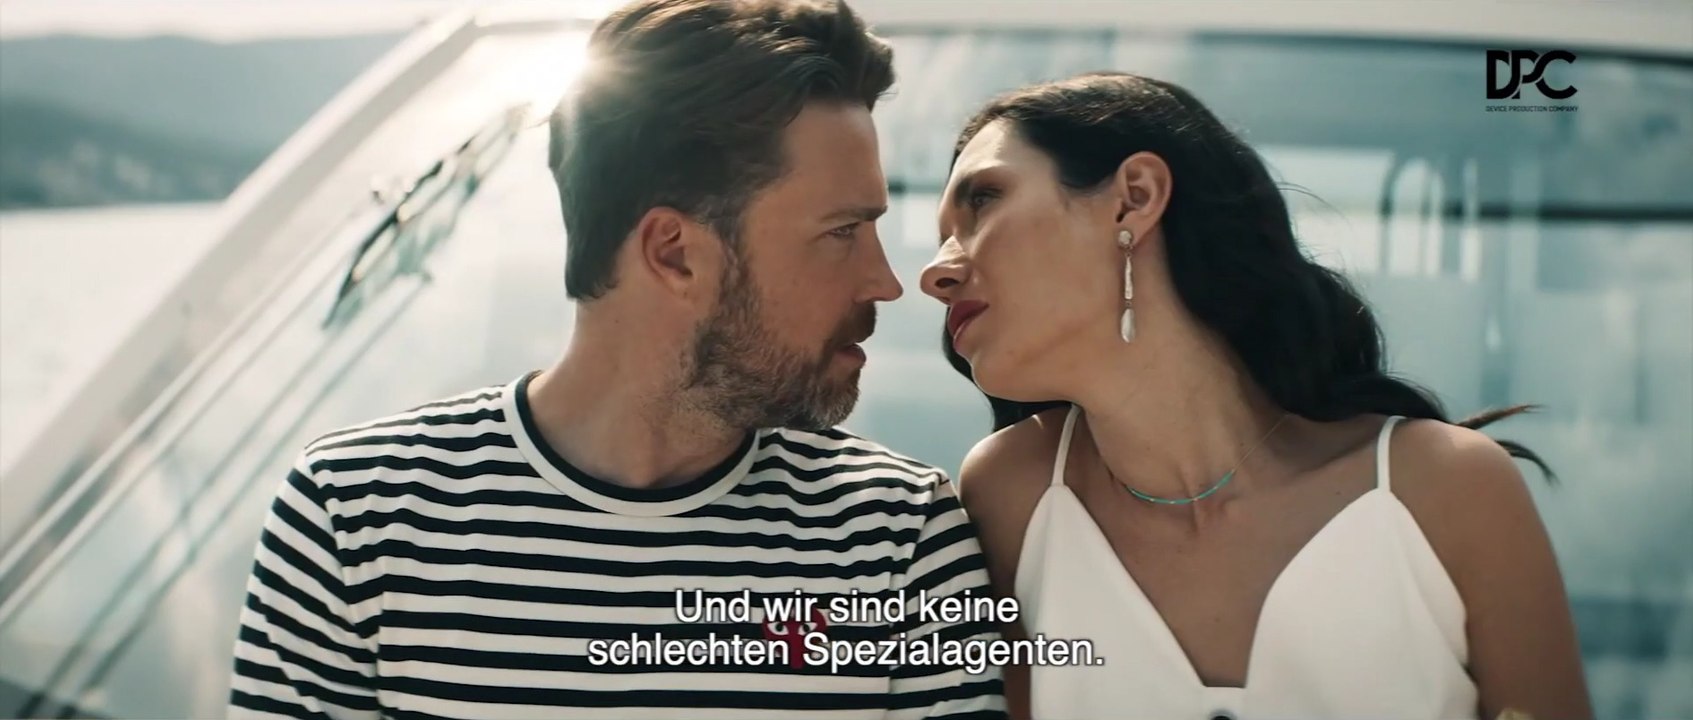 Ehevertrag - Trailer (Deutsche UT) HD